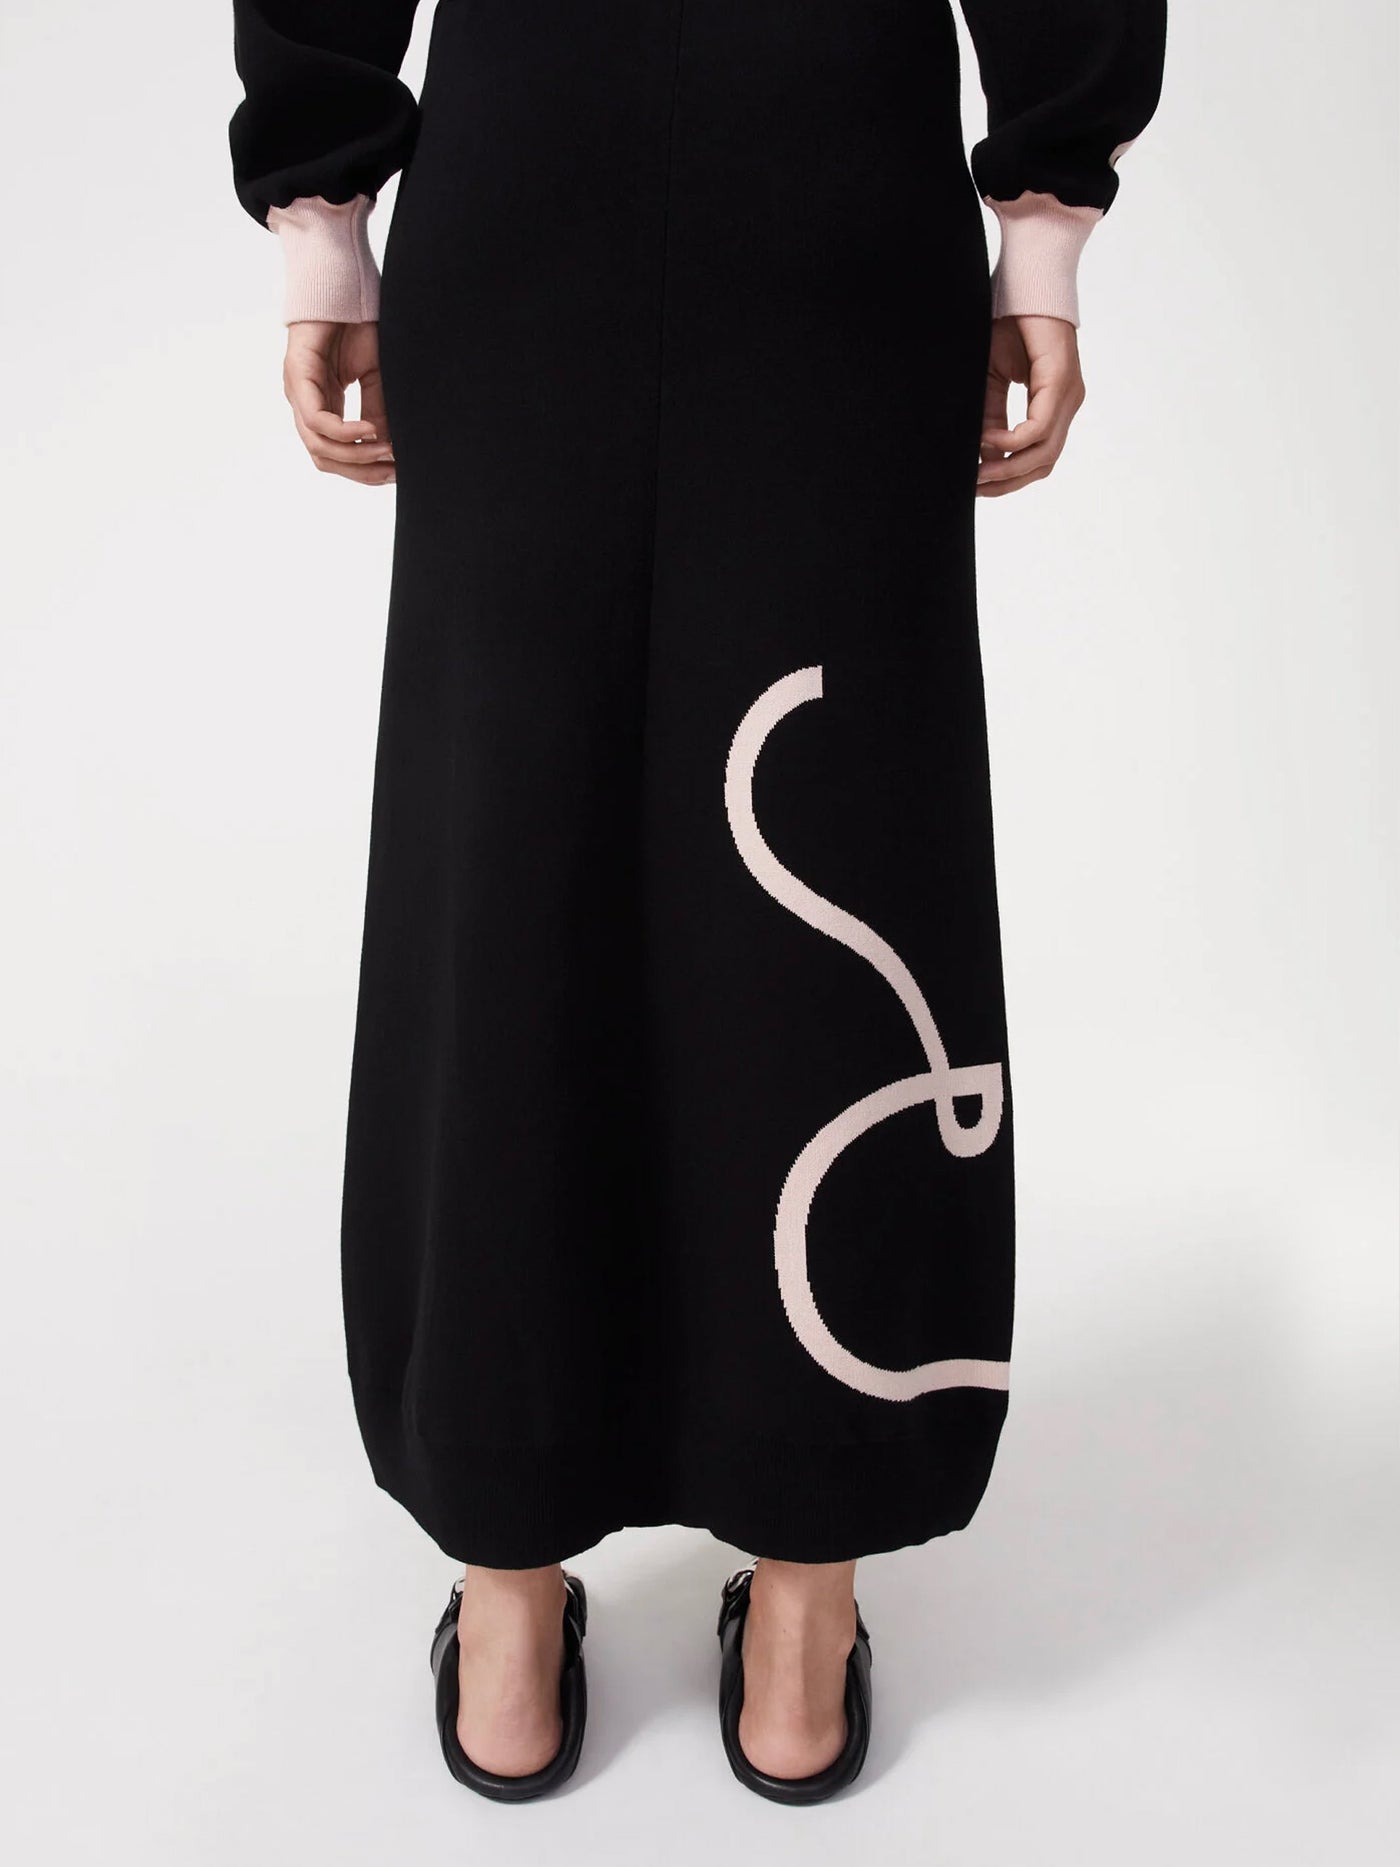 Orma knitted skirt, black